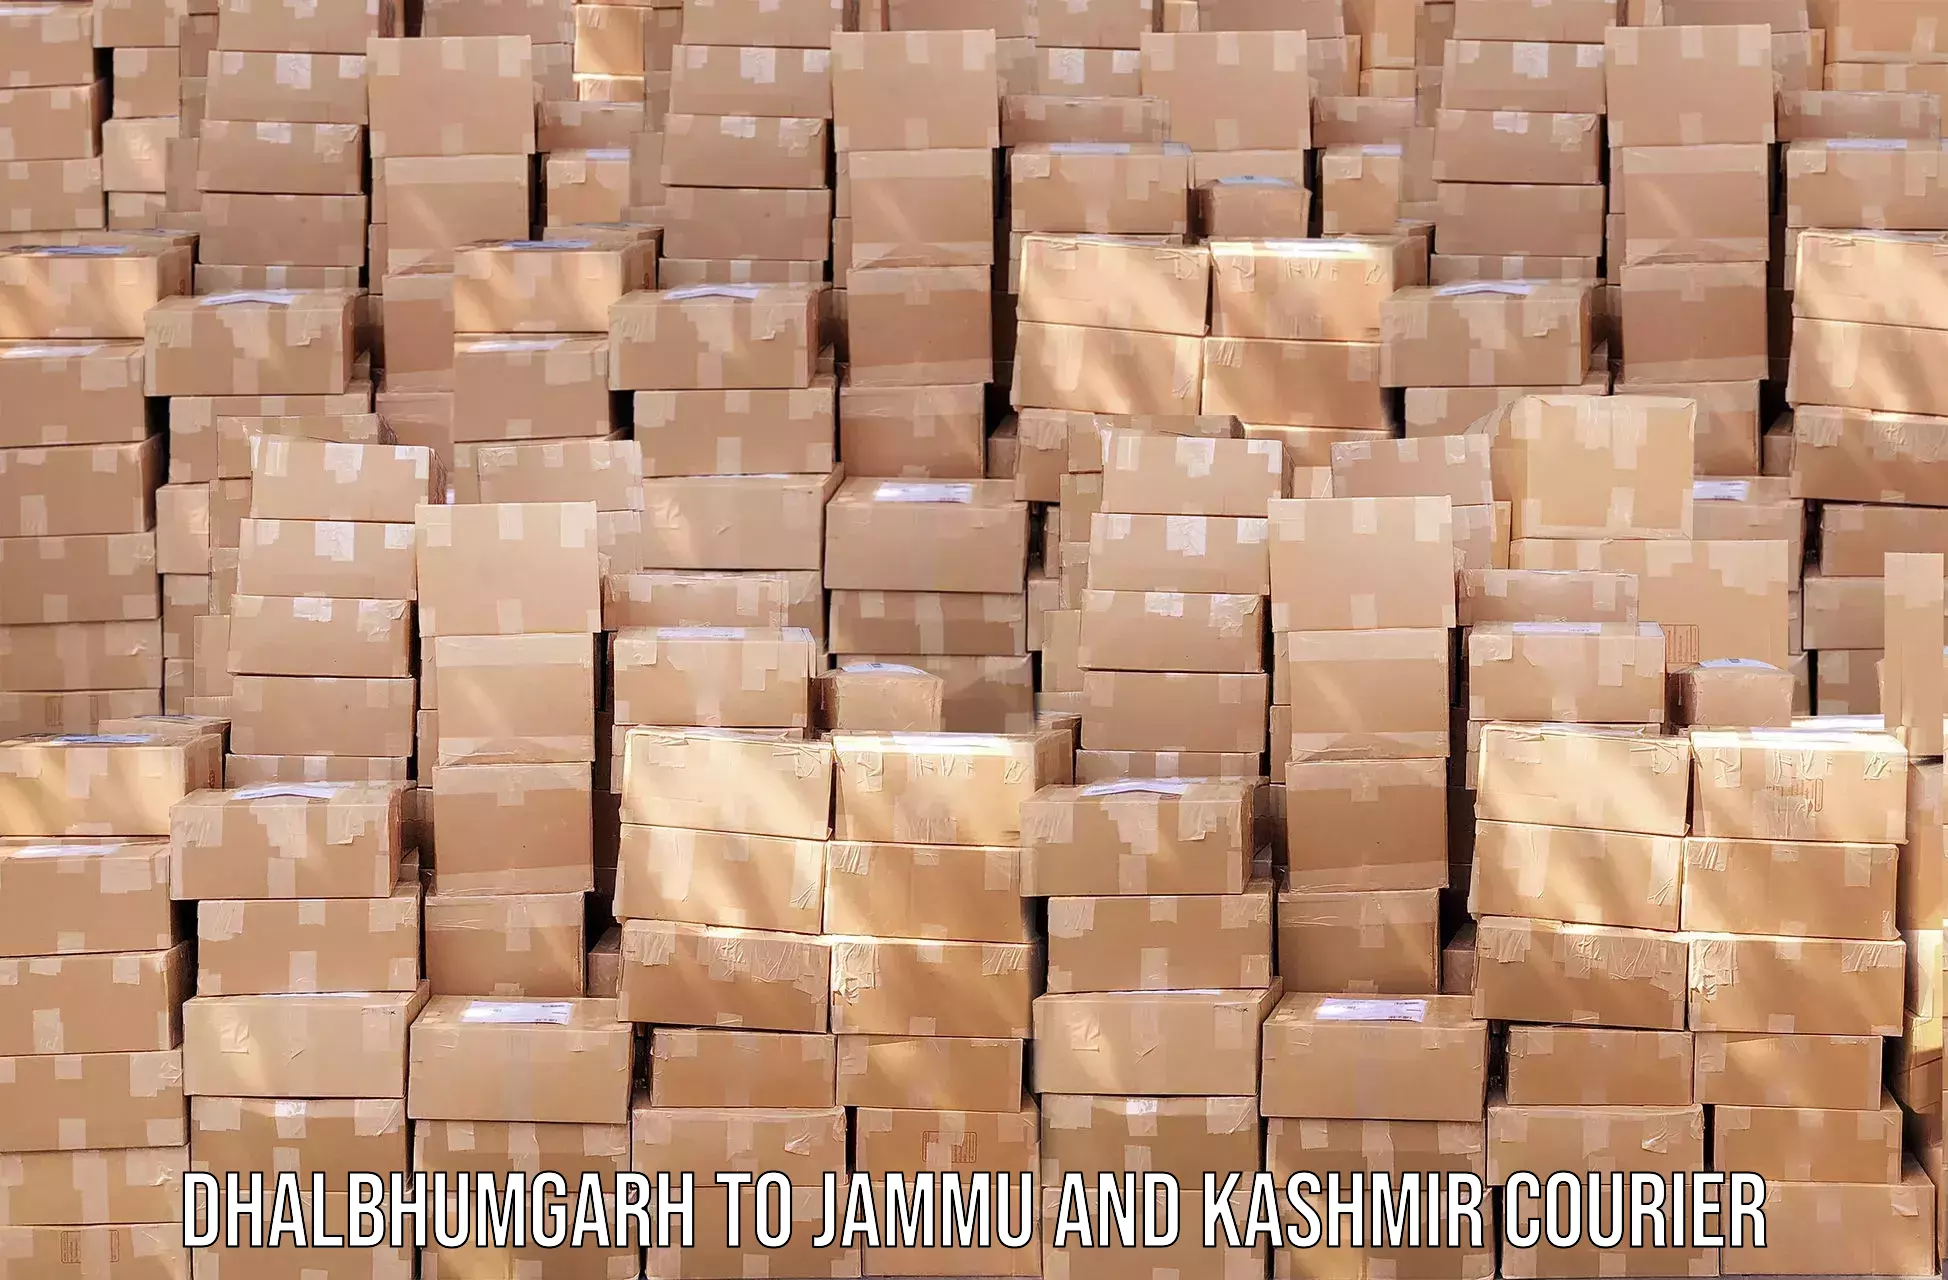 Efficient parcel service Dhalbhumgarh to Anantnag